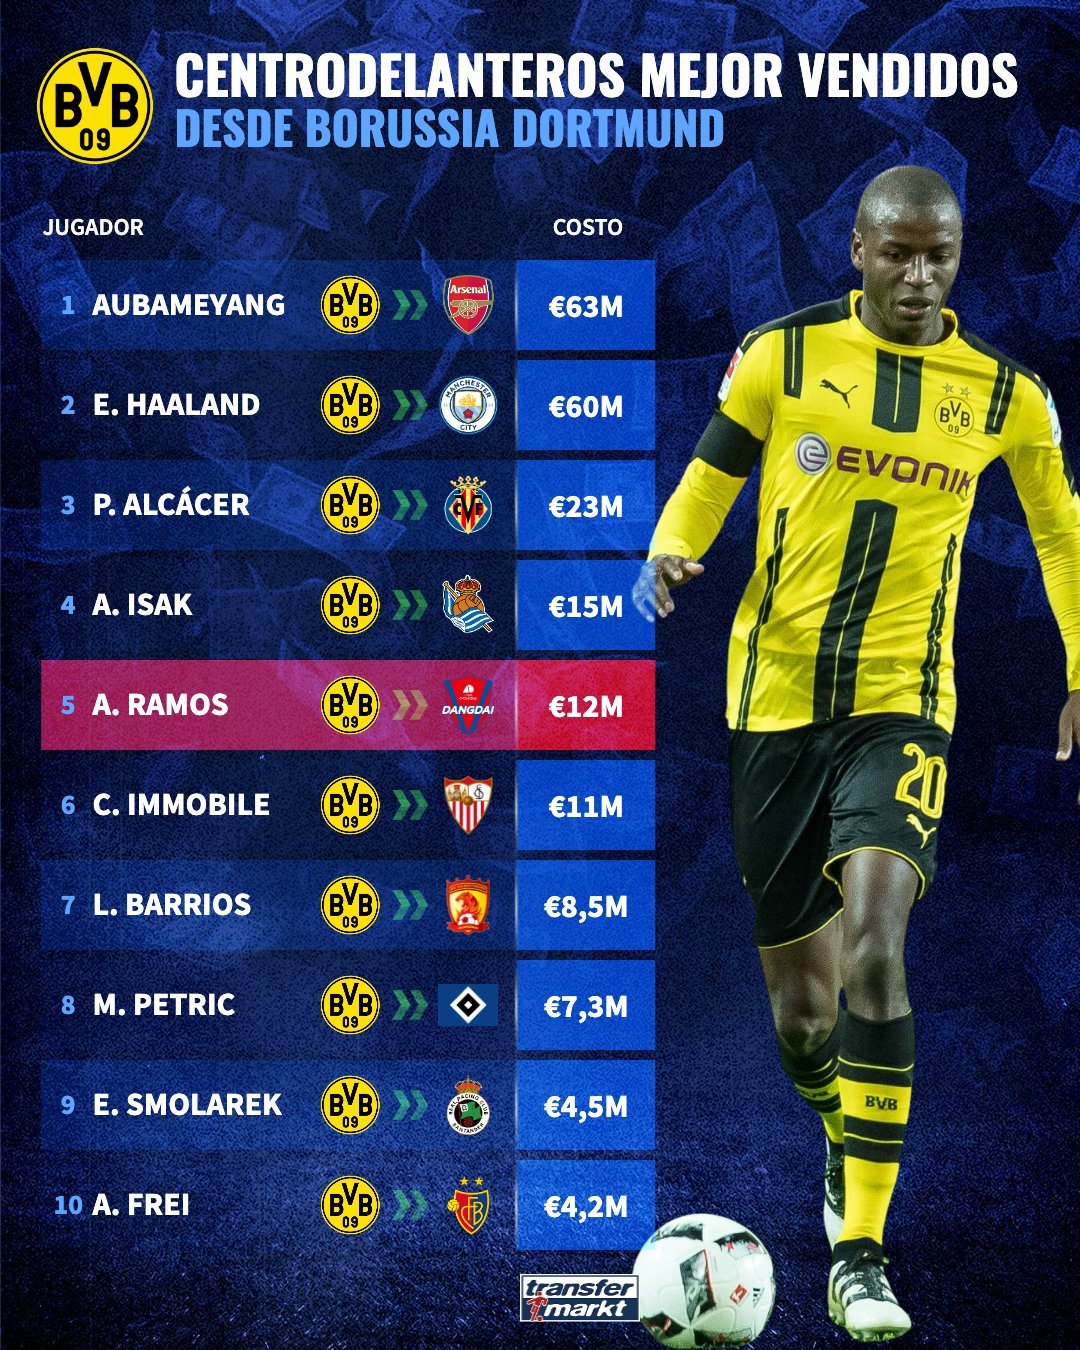 ¿Quién es el 8 del Borussia Dortmund